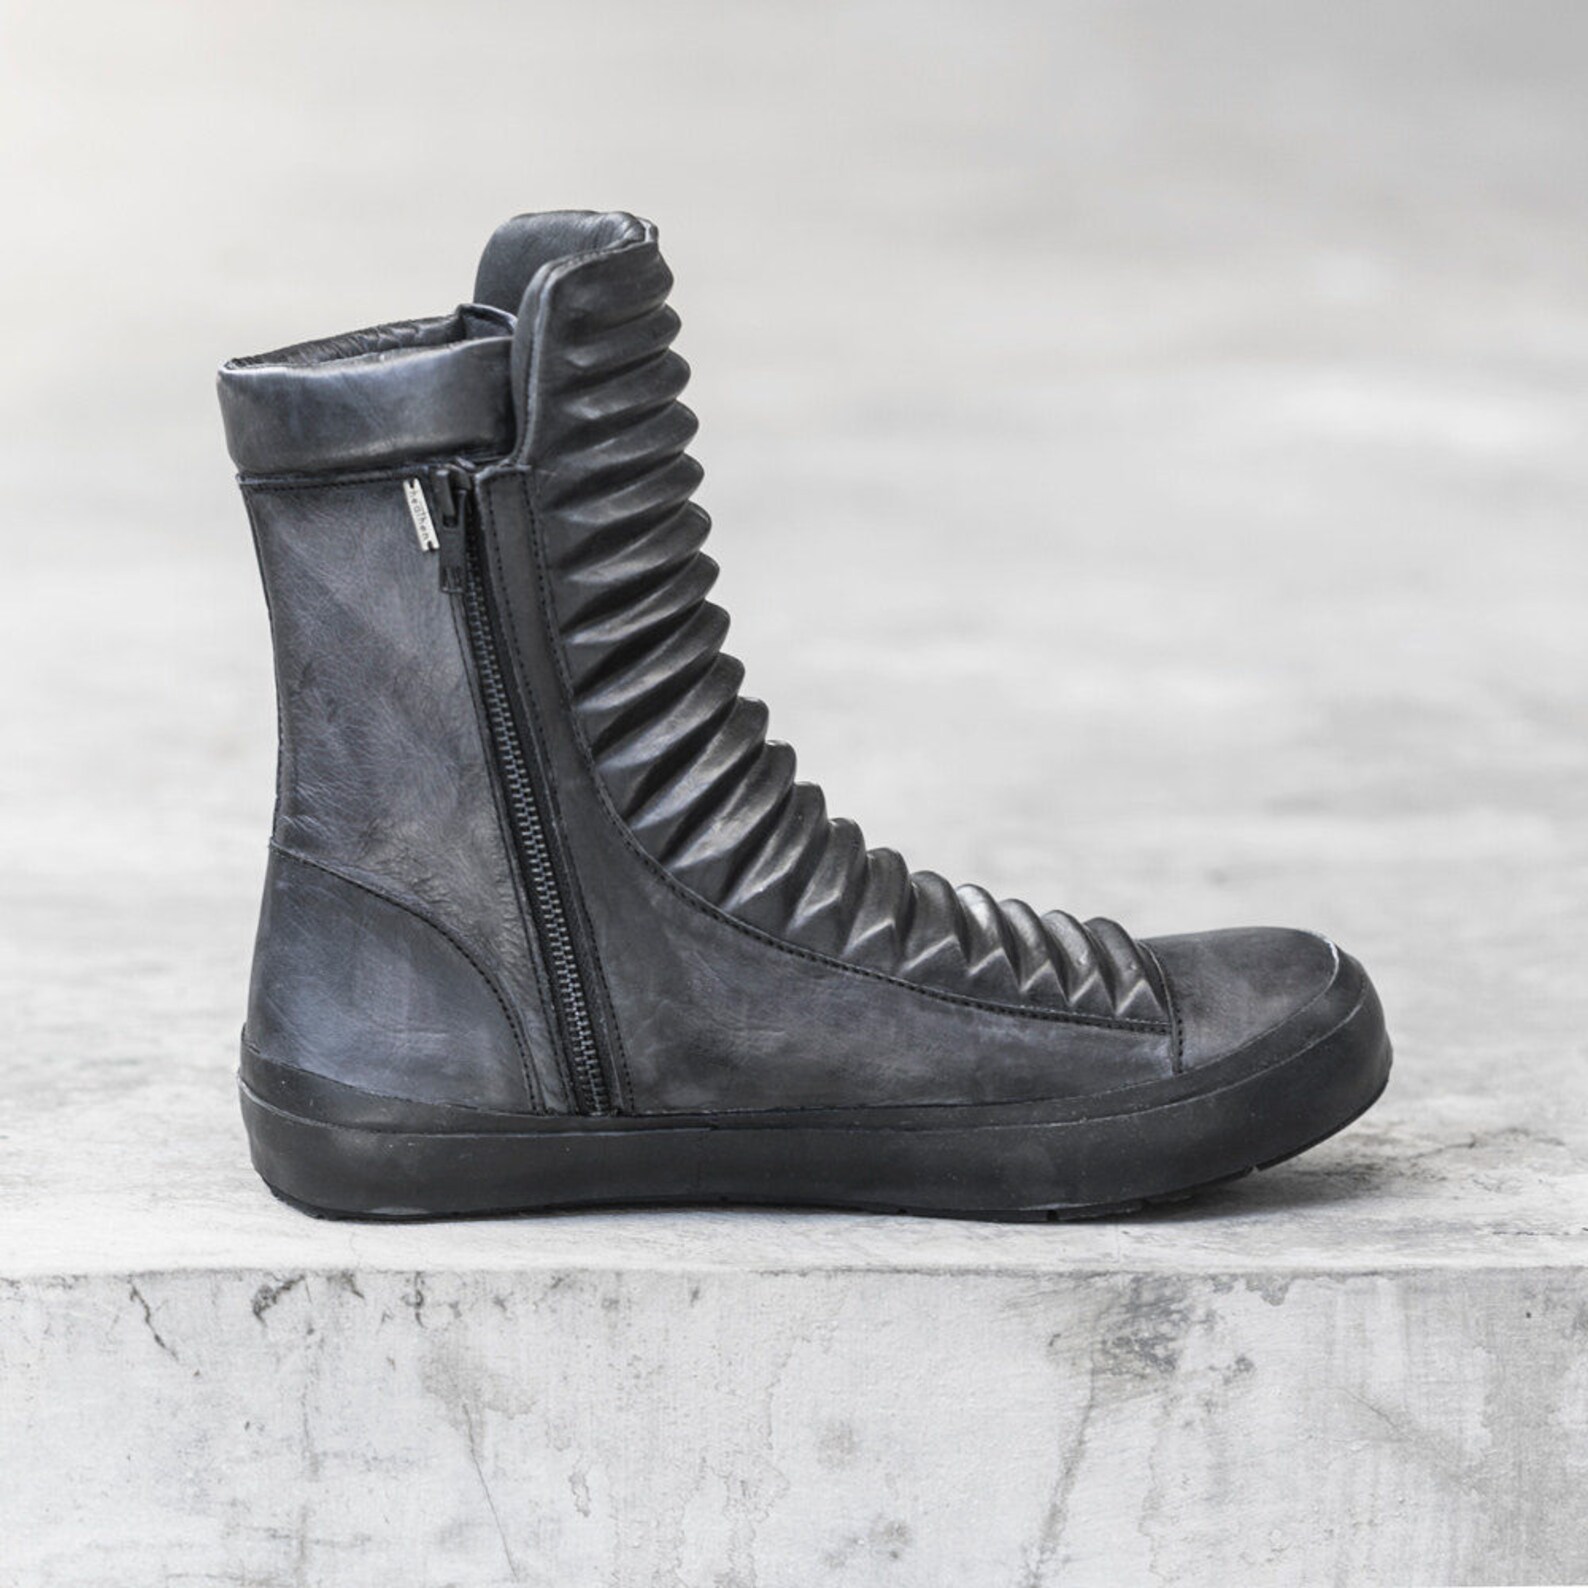 Men's RAZED RIDGED BOOT Black Leather High Top Sneaker - Etsy